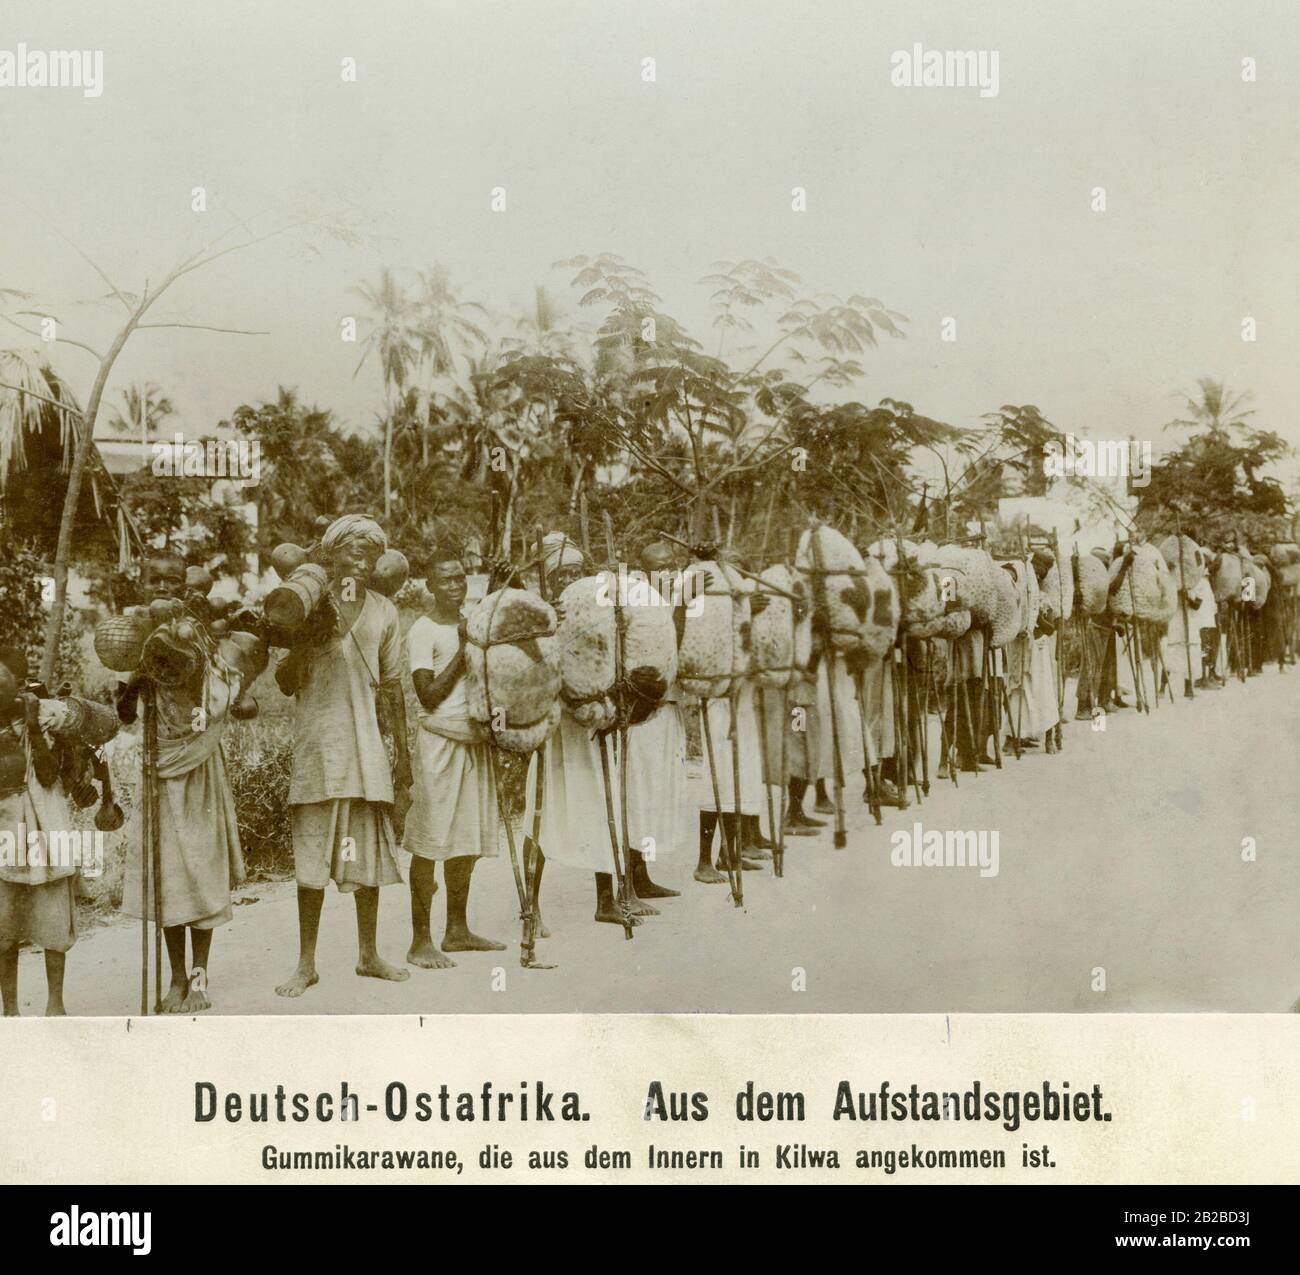 Einheimische Karawane aus dem Hinterland des deutschen Ostafrikas Kilwa, wo es Aufstände gegen die deutsche Kolonialverwaltung gab. Stockfoto